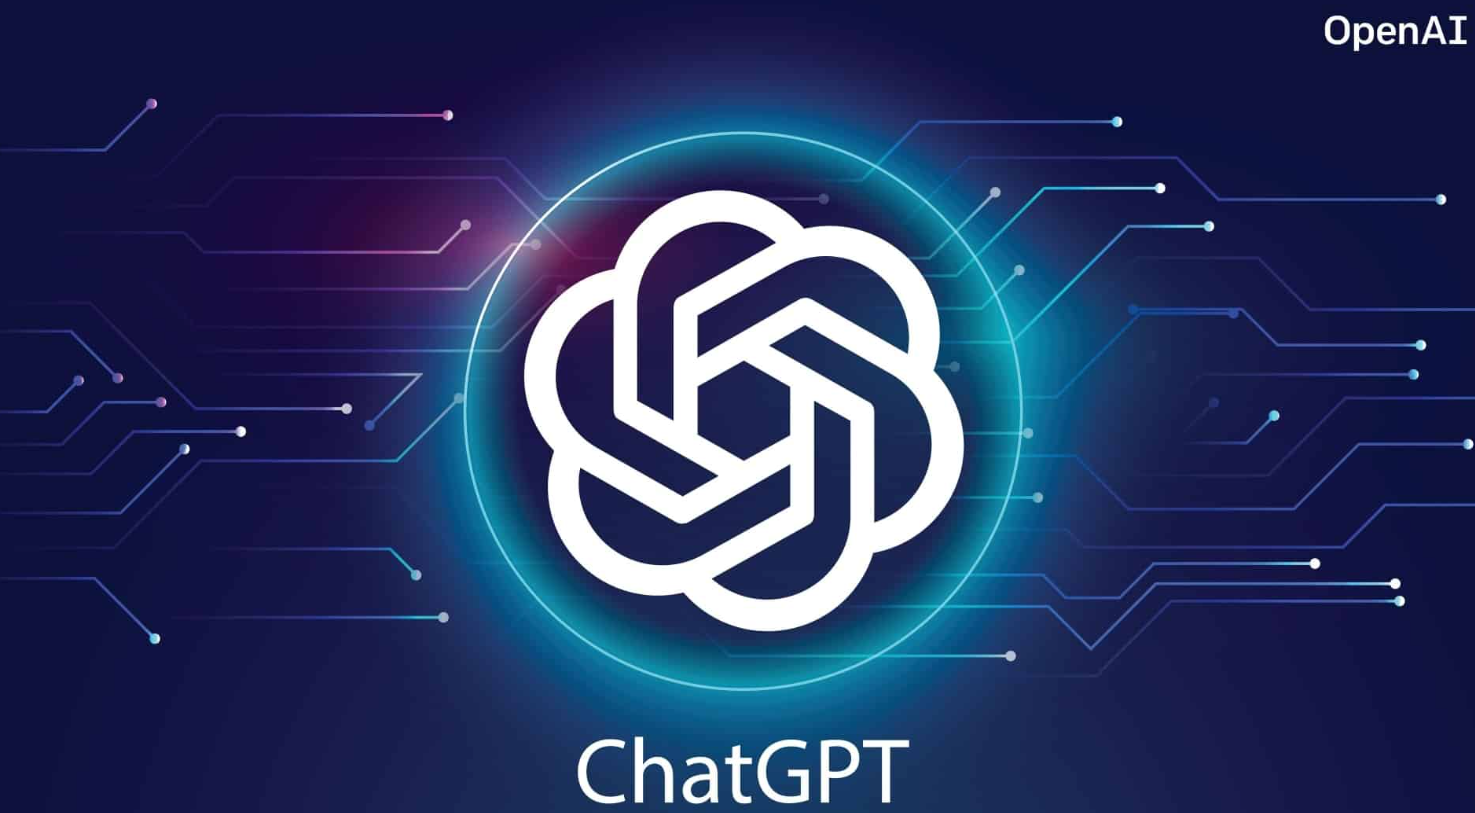 OpenAI：很快推出「ChatGPT企业版」、已开放用户禁用聊天纪录